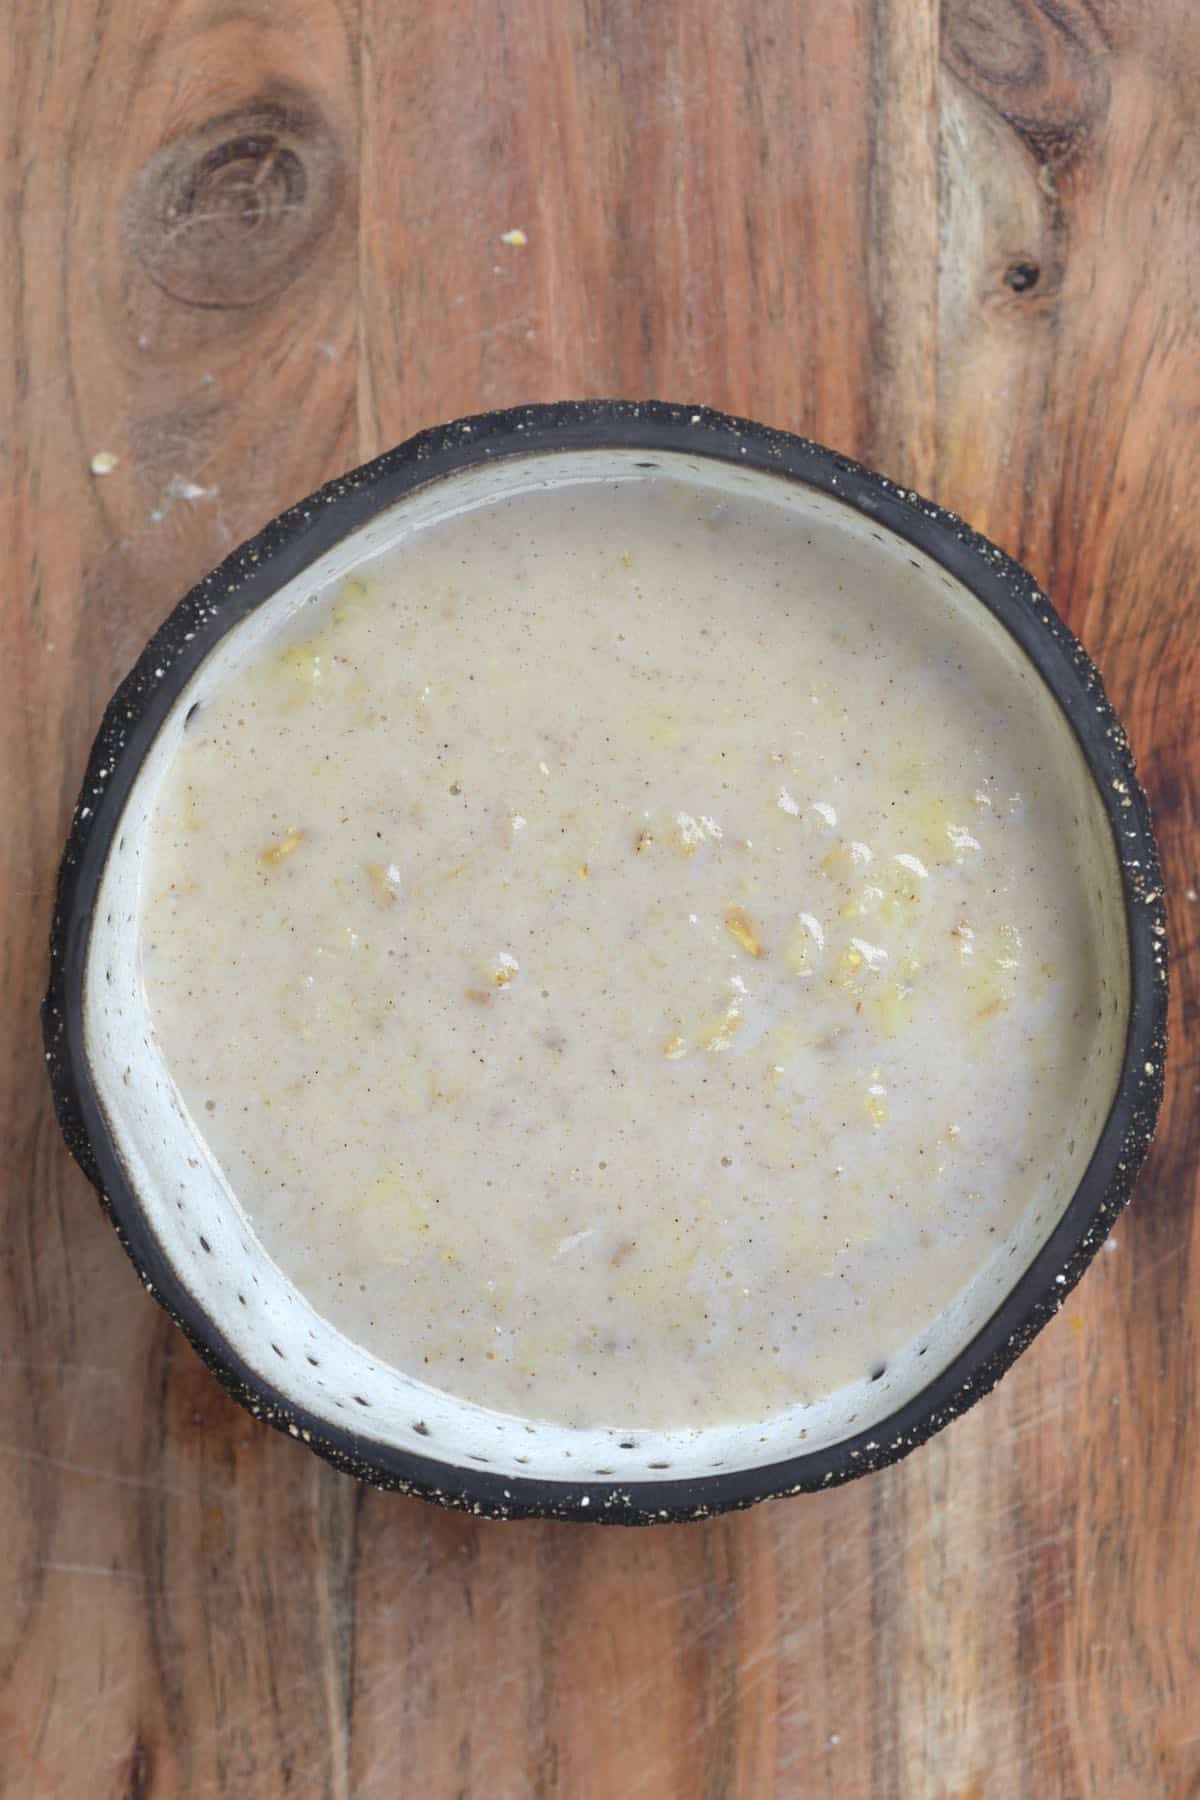 Banana oatmeal in a bowl